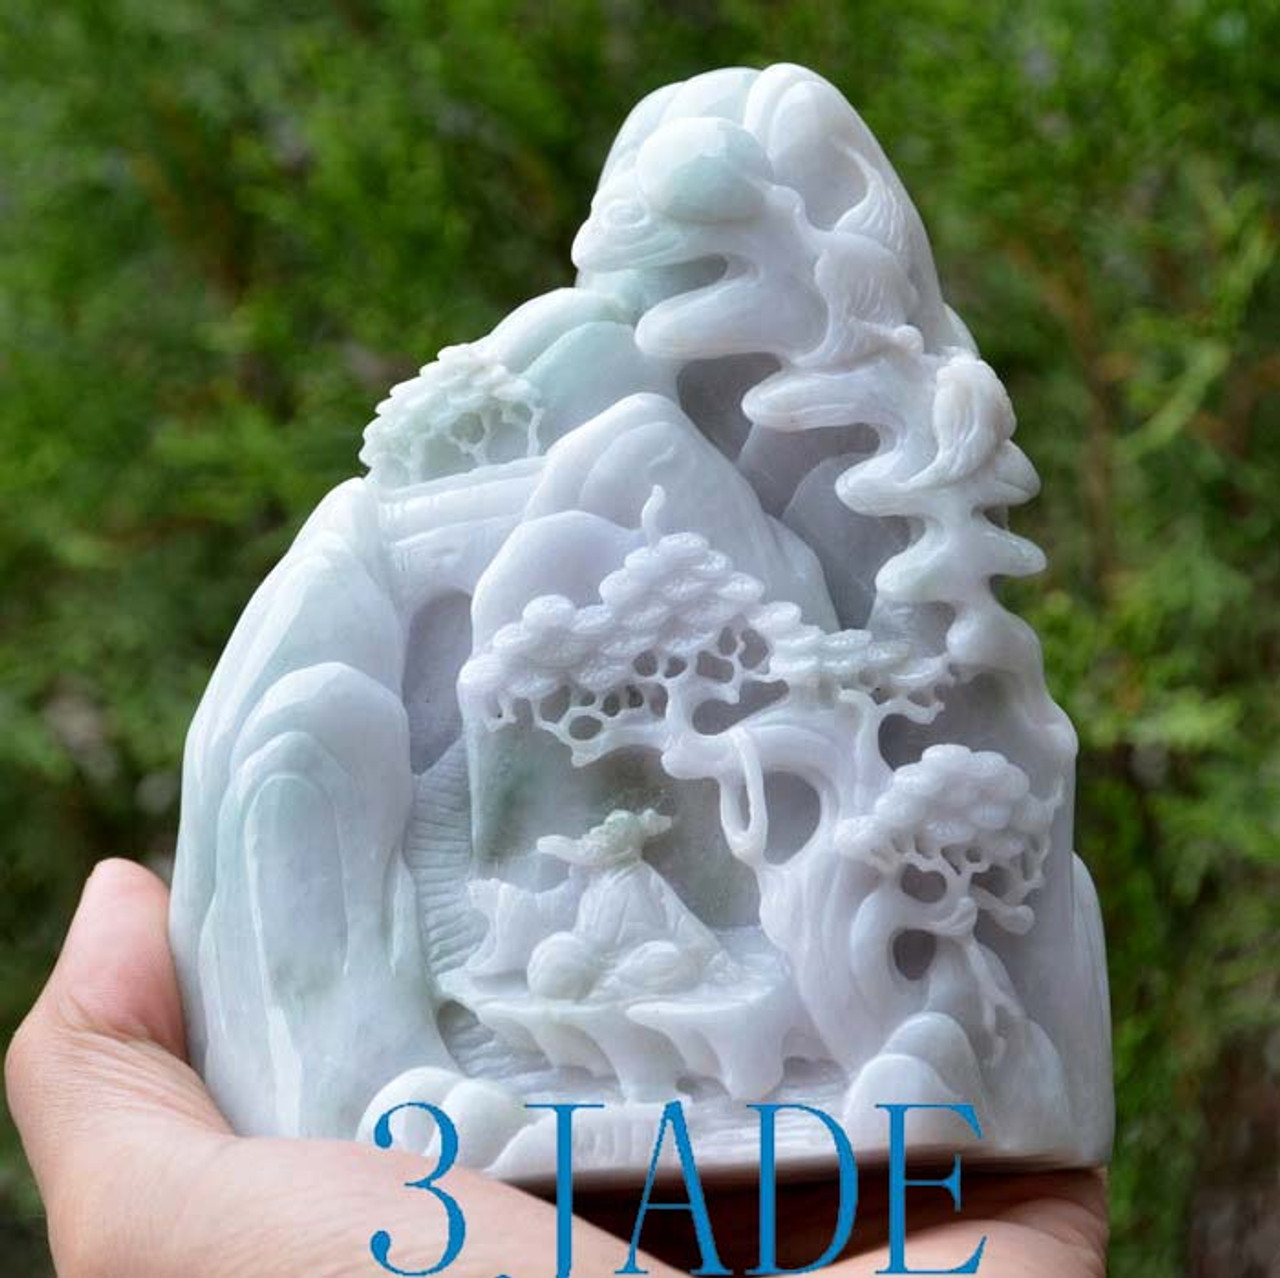 jadeite carving